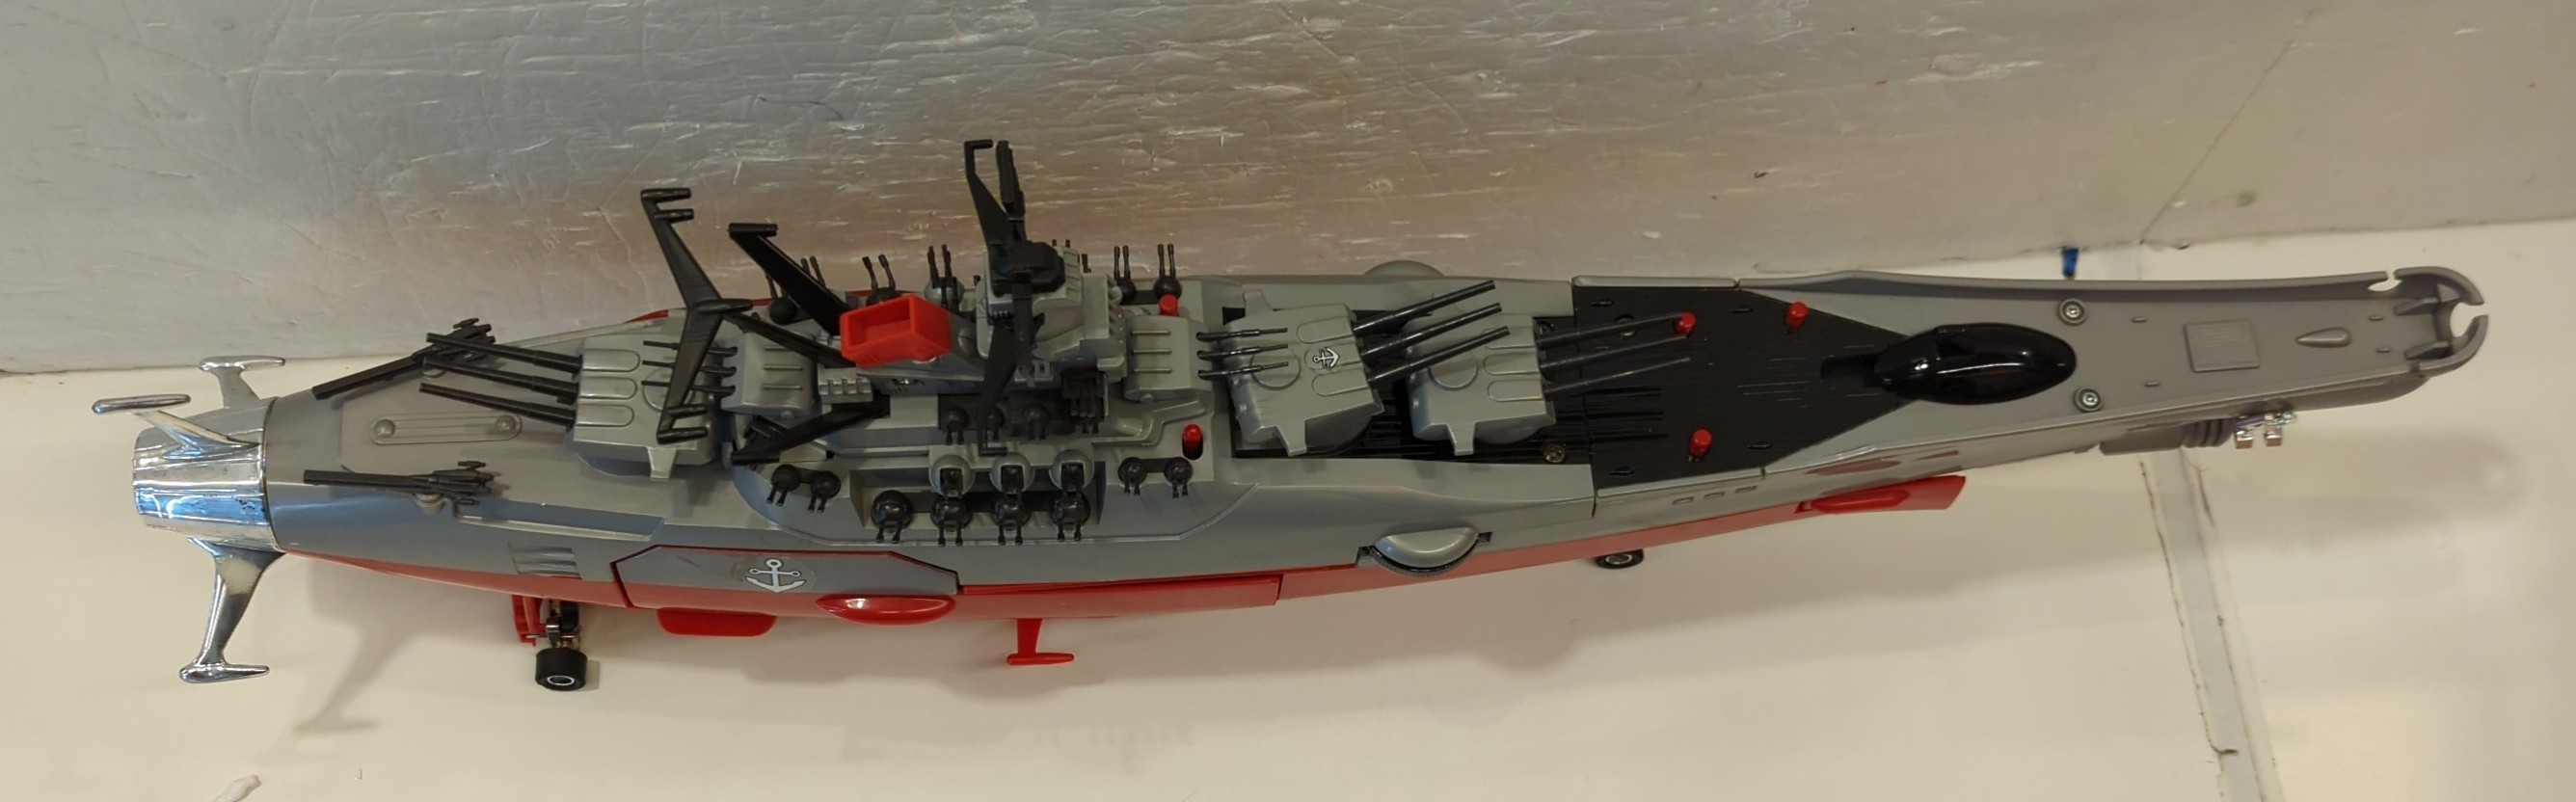 ビッグスケール DX 宇宙戦艦ヤマトⅢ ポピー - 模型/プラモデル